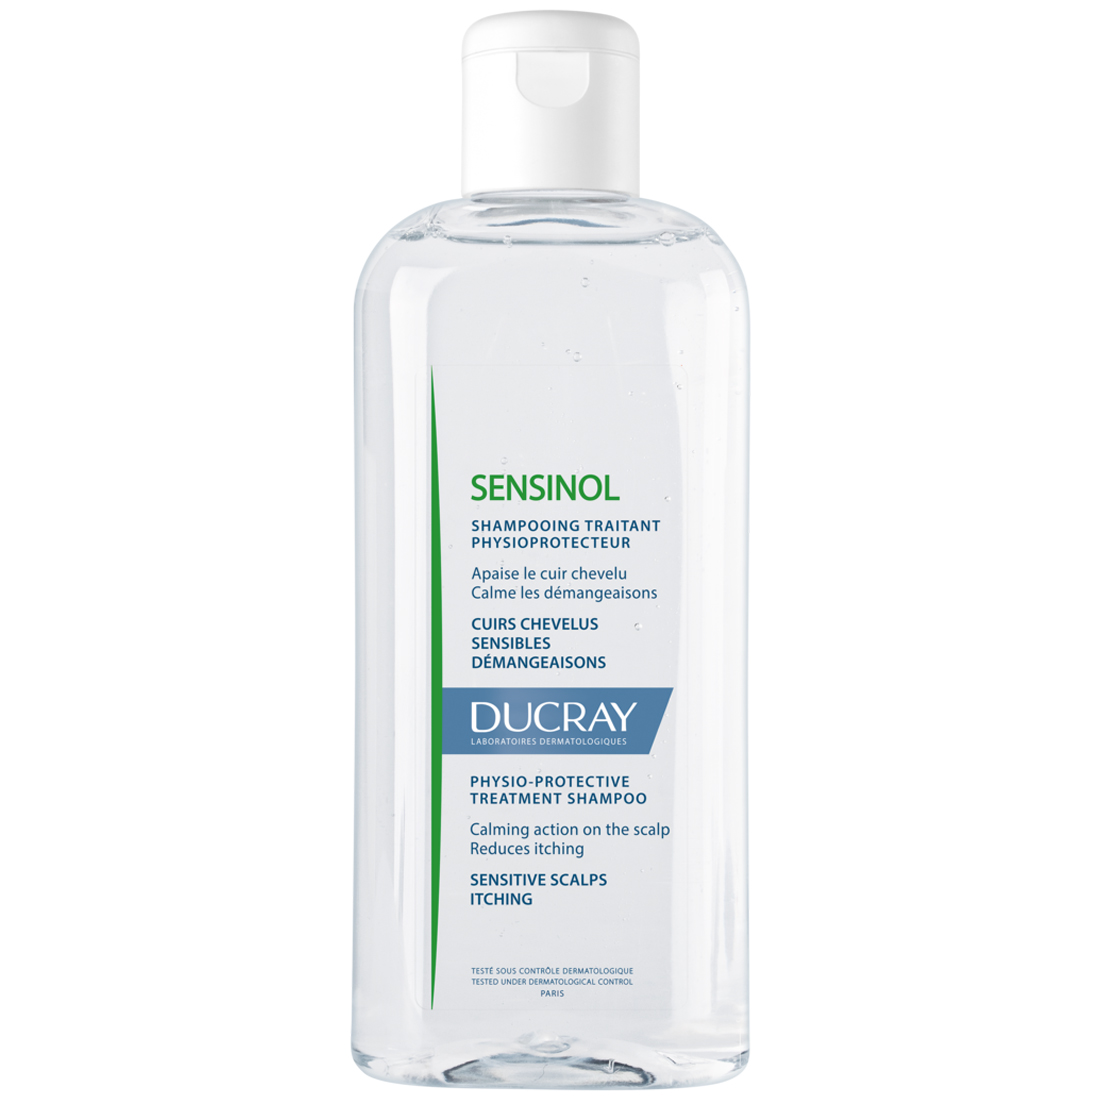 Ducray Физиологический защитный шампунь для чувствительной кожи, 200 мл (Ducray, Sensinol) ducray sensinol физиологический шампунь для волос 400 мл